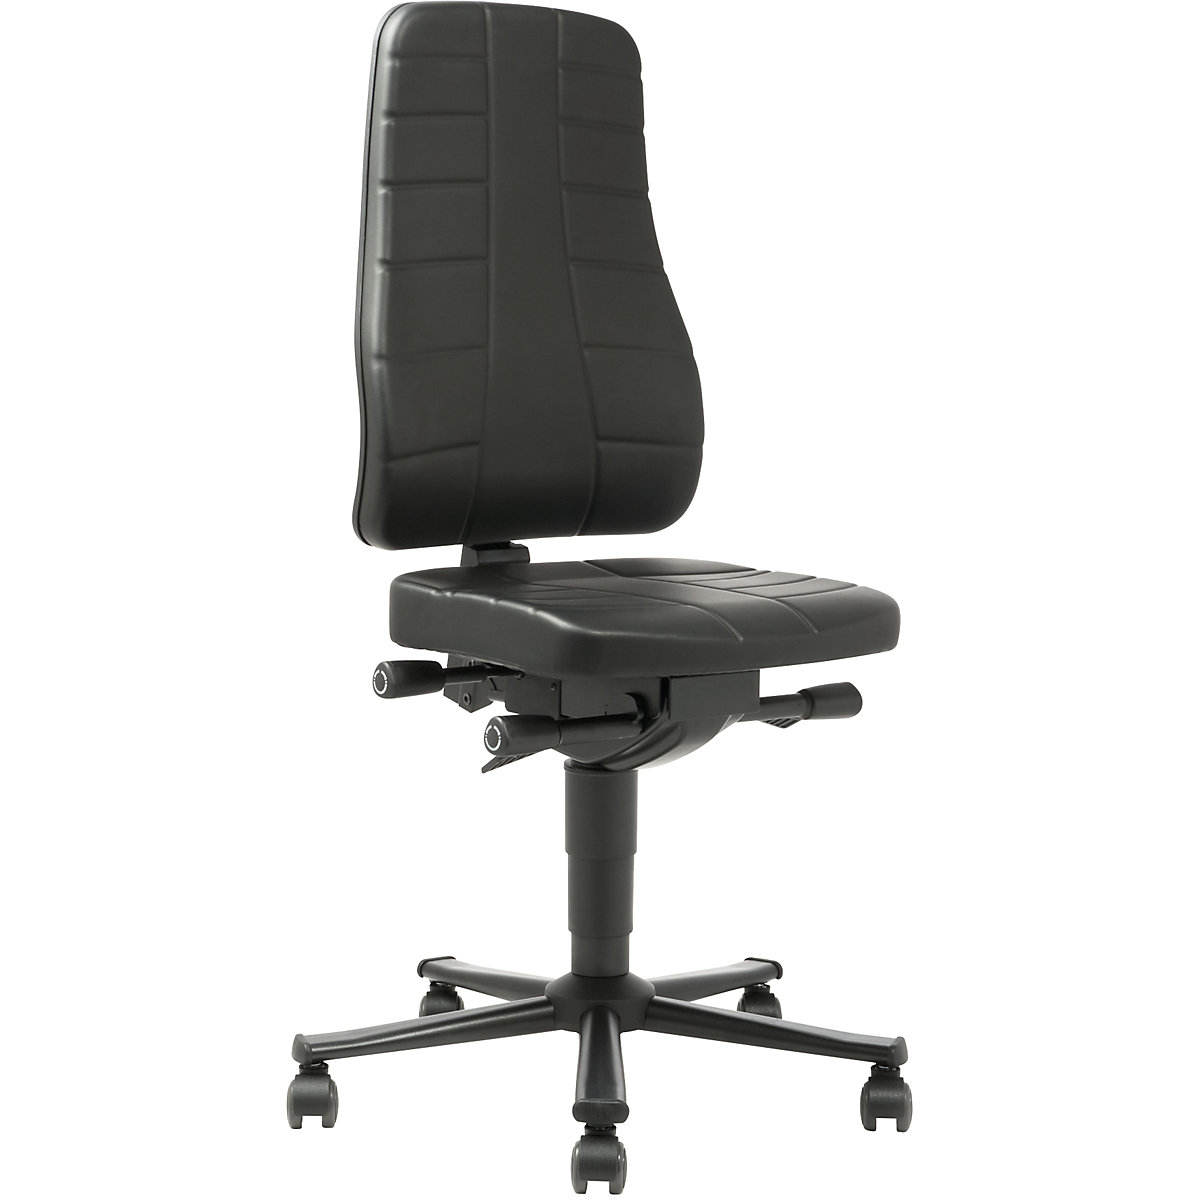 Pracovní otočná židle All-in-One – bimos, s kolečky, koženka, černá-8